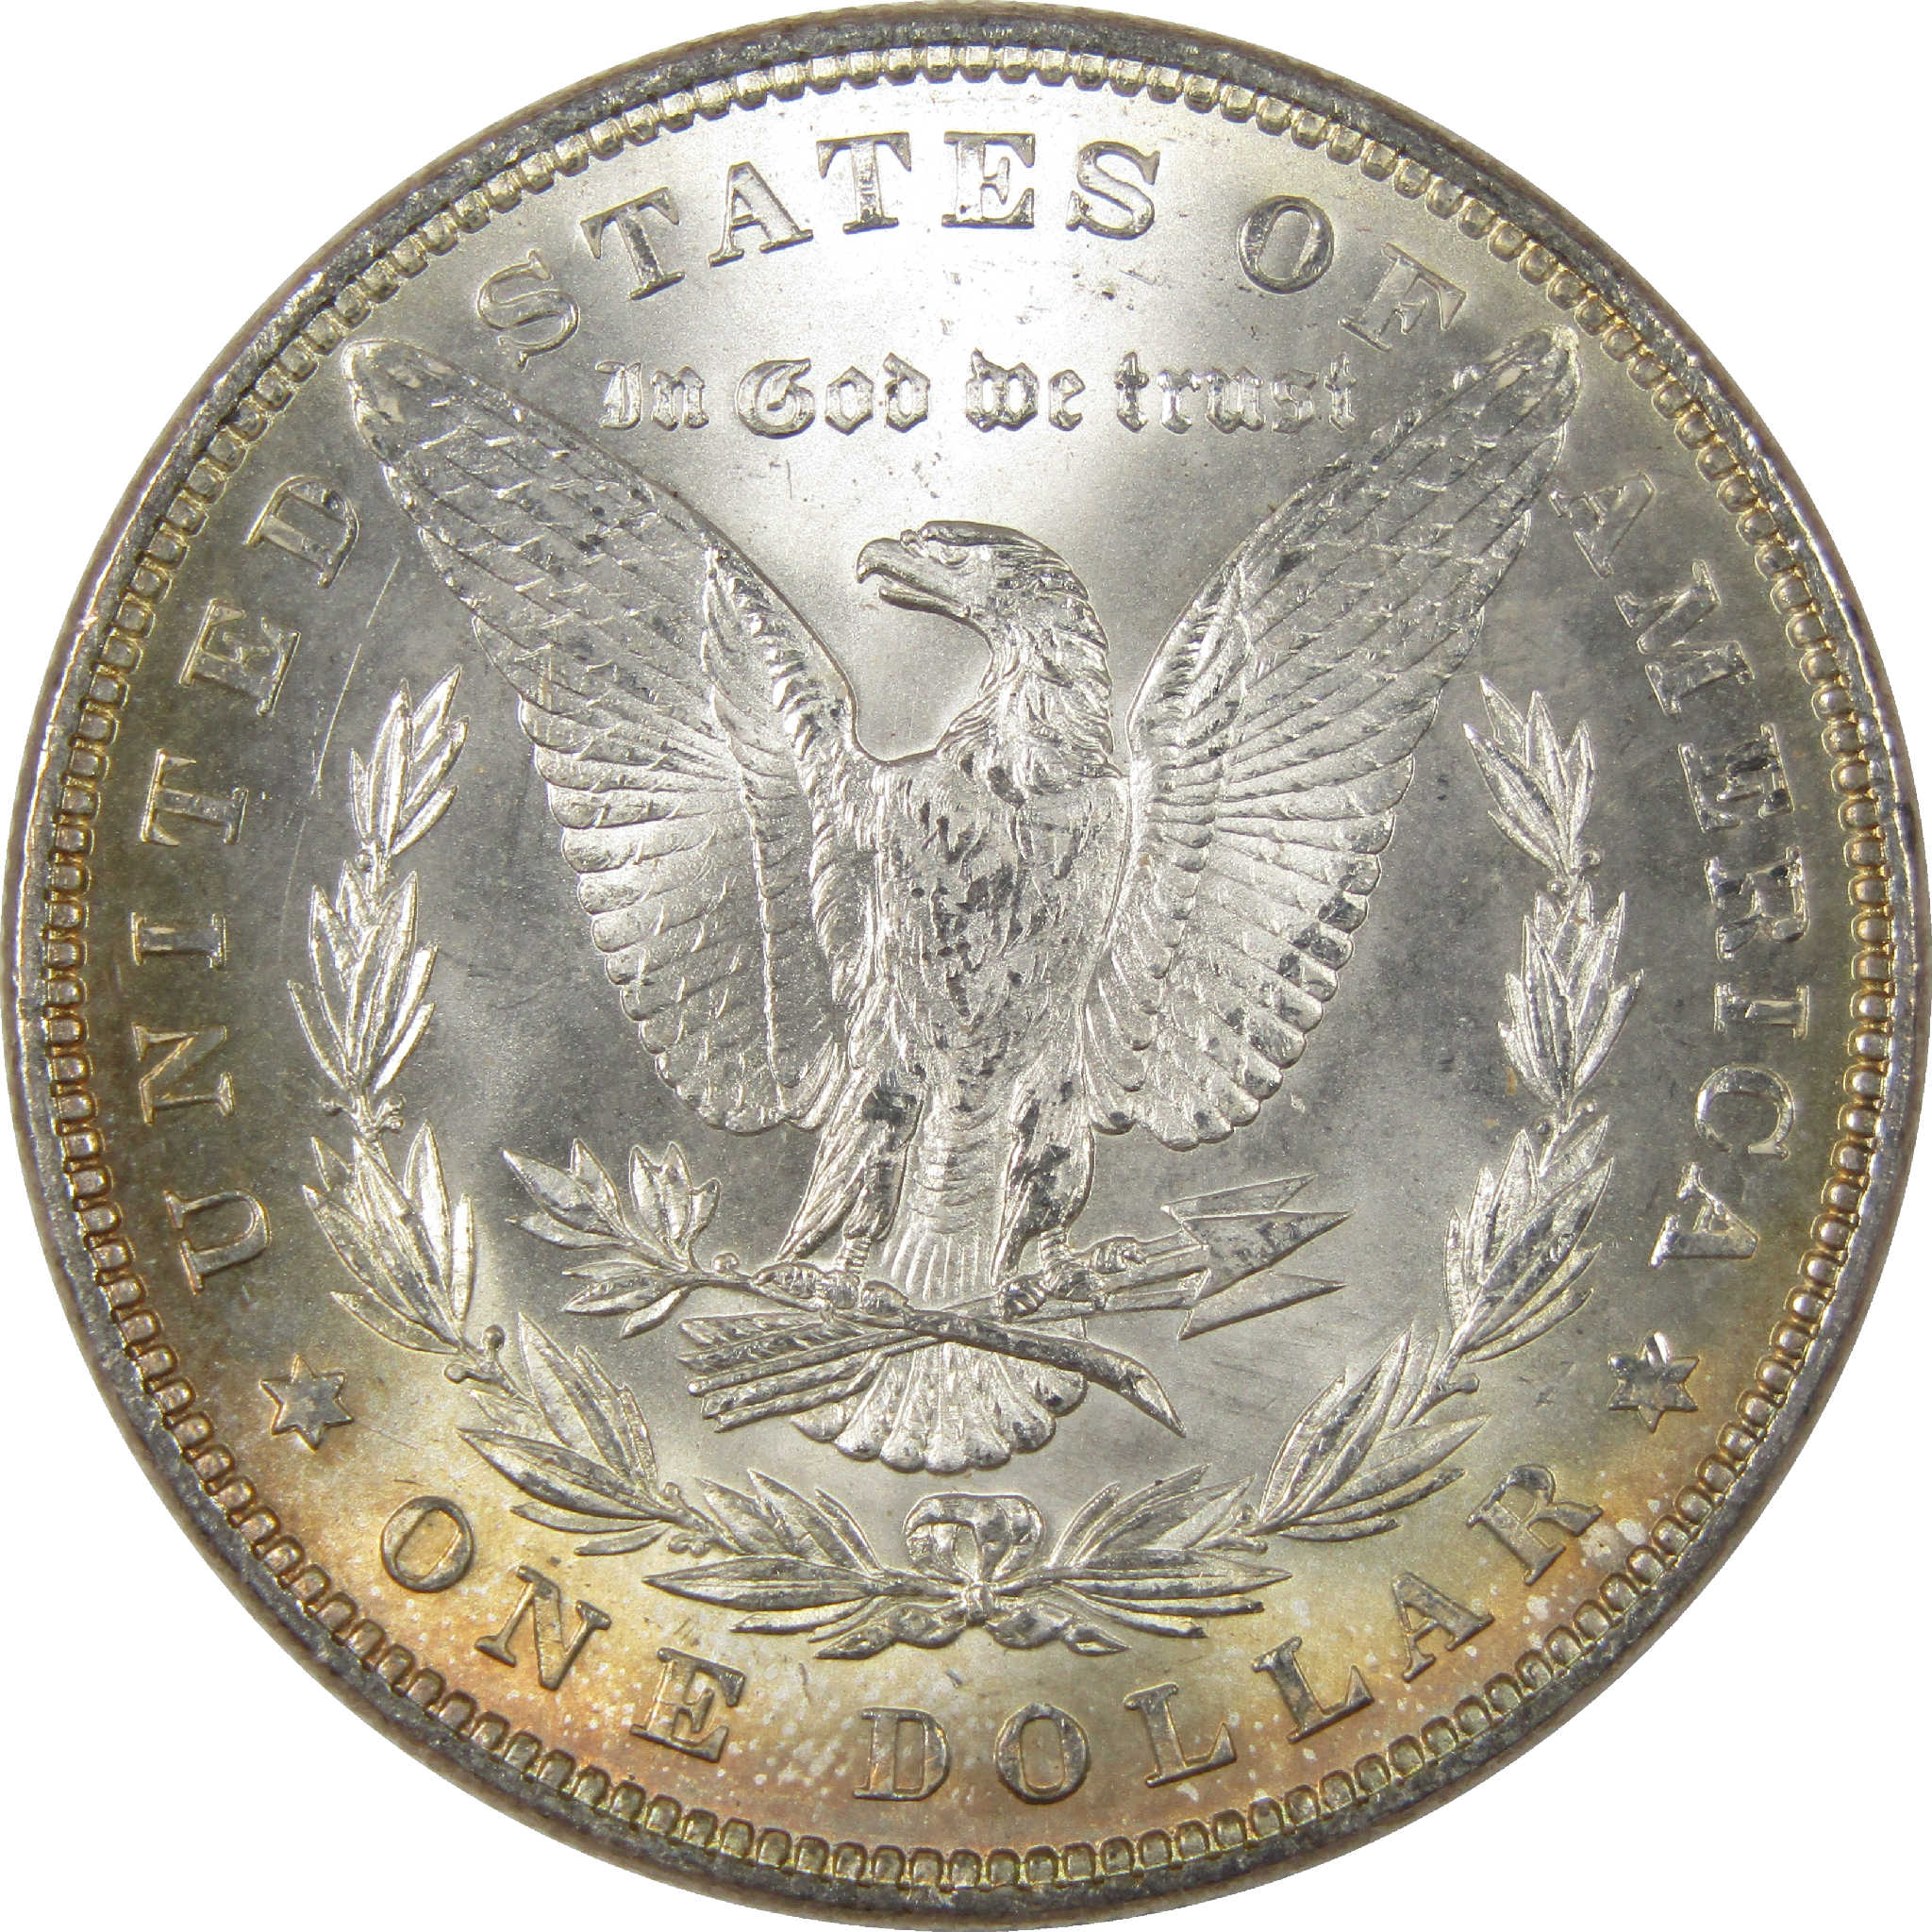 1882 Morgan Dollar Uncirculated Silver $1 Coin - Morgan coin - Morgan silver dollar - Morgan silver dollar for sale - Profile Coins &amp; Collectibles